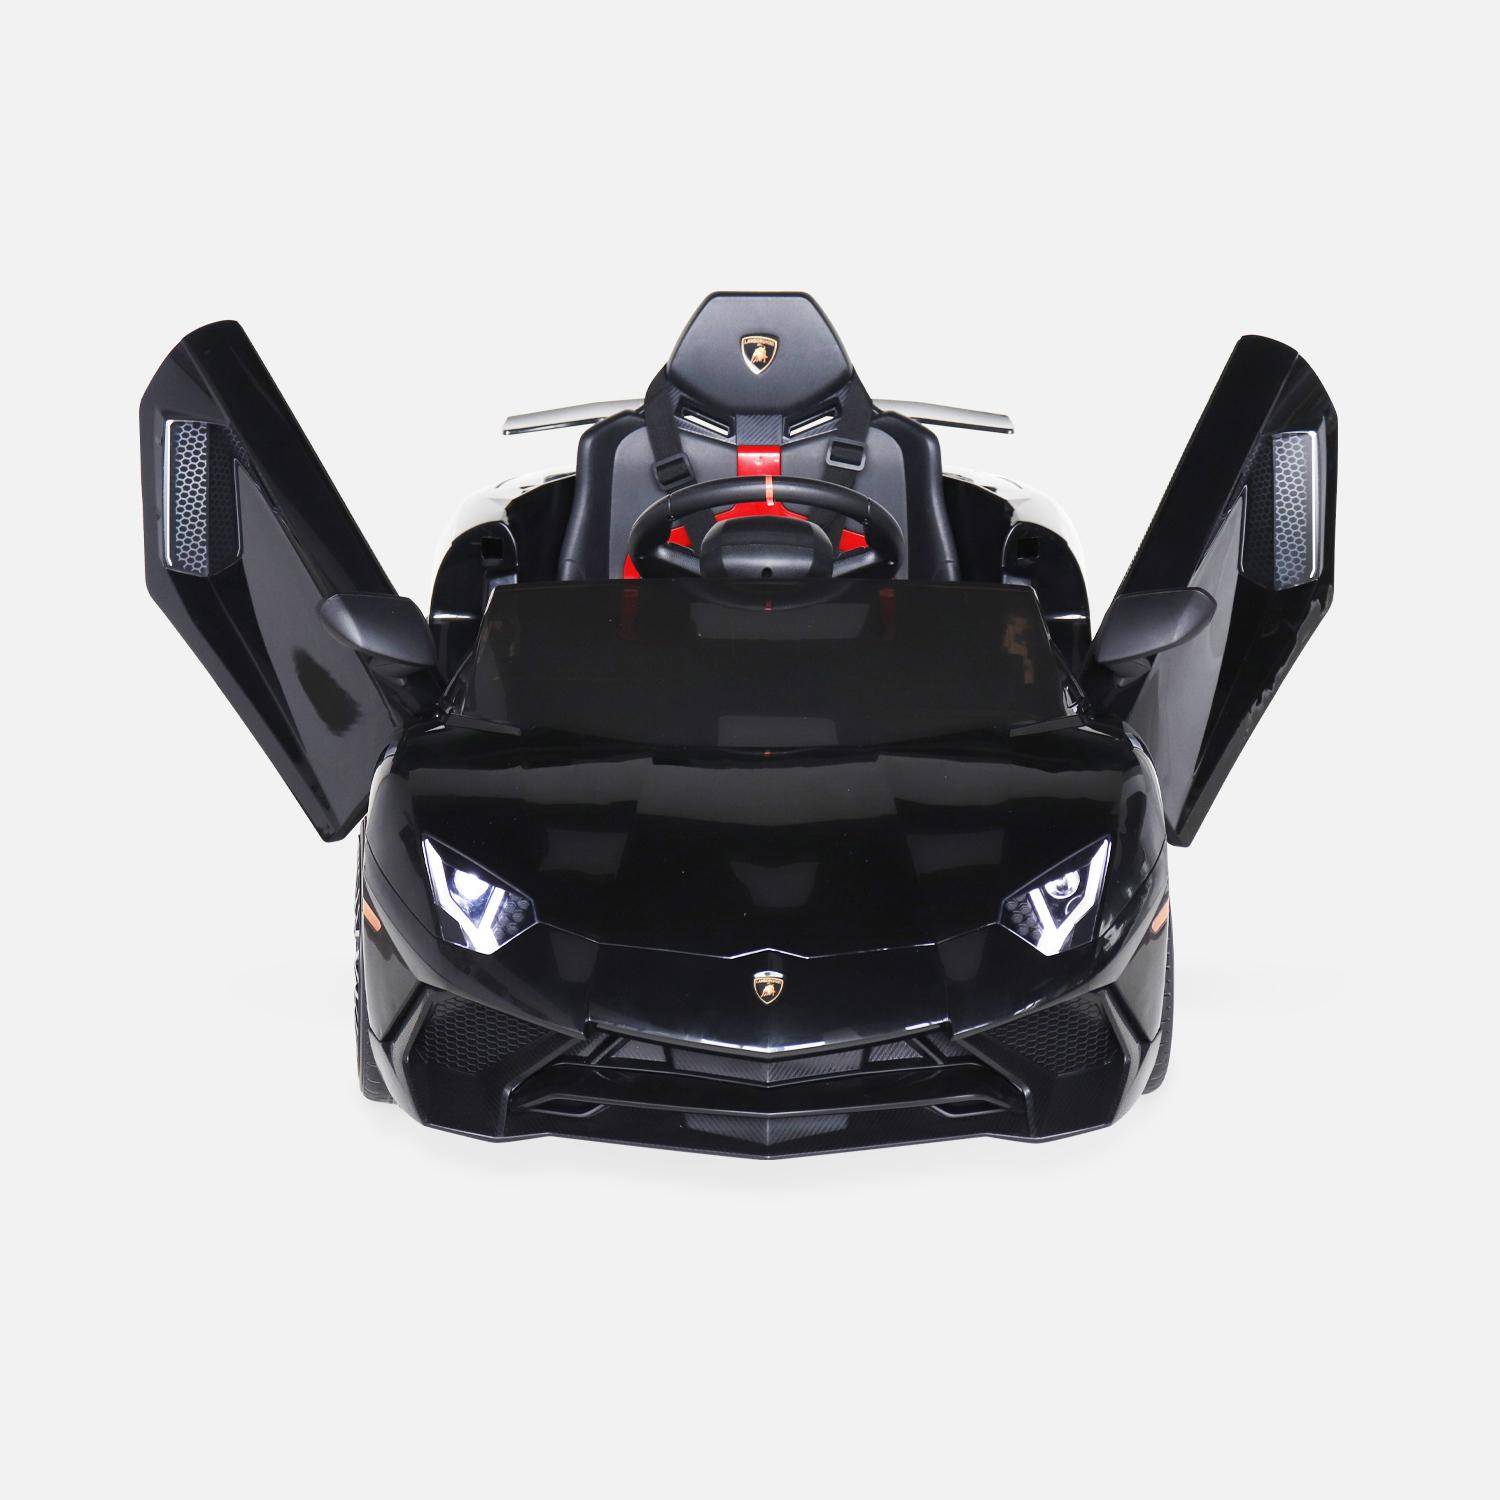 12V Lamborghini elektrische kinderauto, zwart, 1 zitplaats, met radio, afstandsbediening, MP3, USB-poort en functionele koplampen,sweeek,Photo6